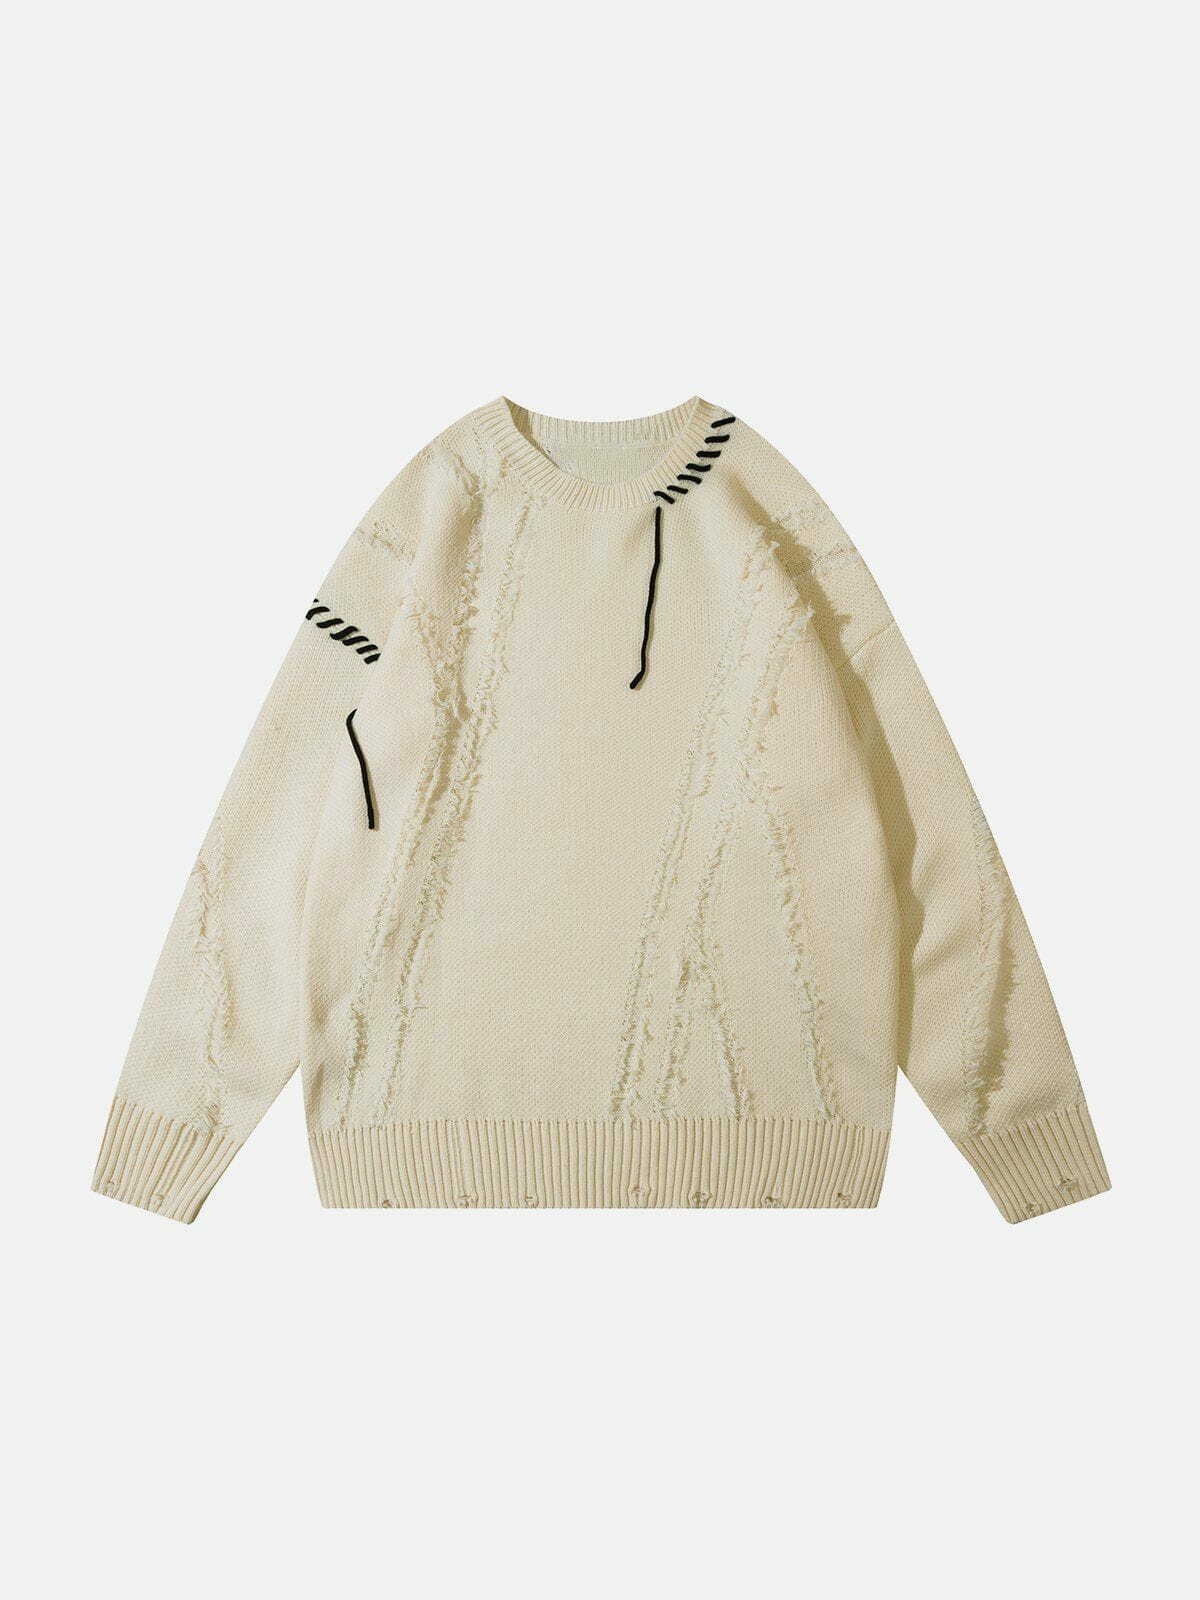 oversized webbing sweater edgy y2k fashion icon 6695